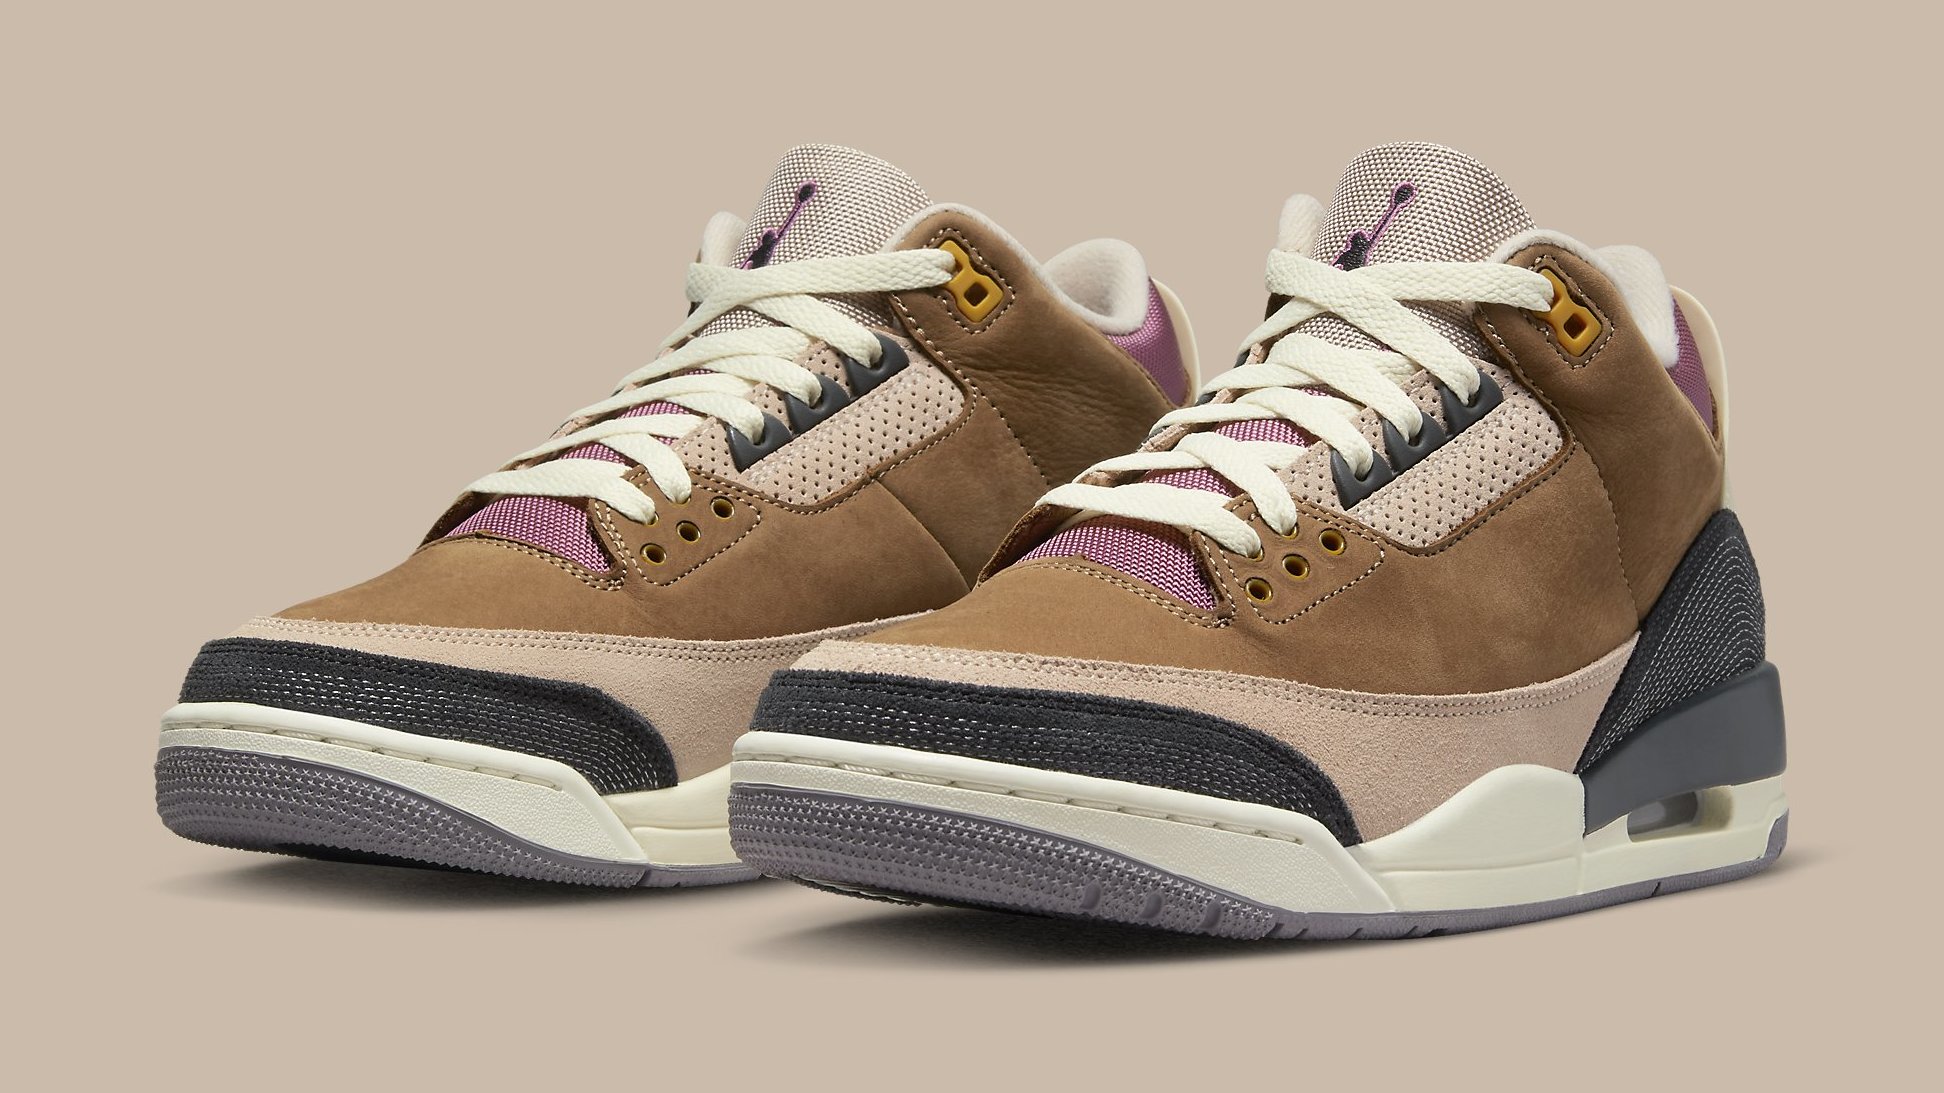 Air Jordan 3 Retro, Sneakers